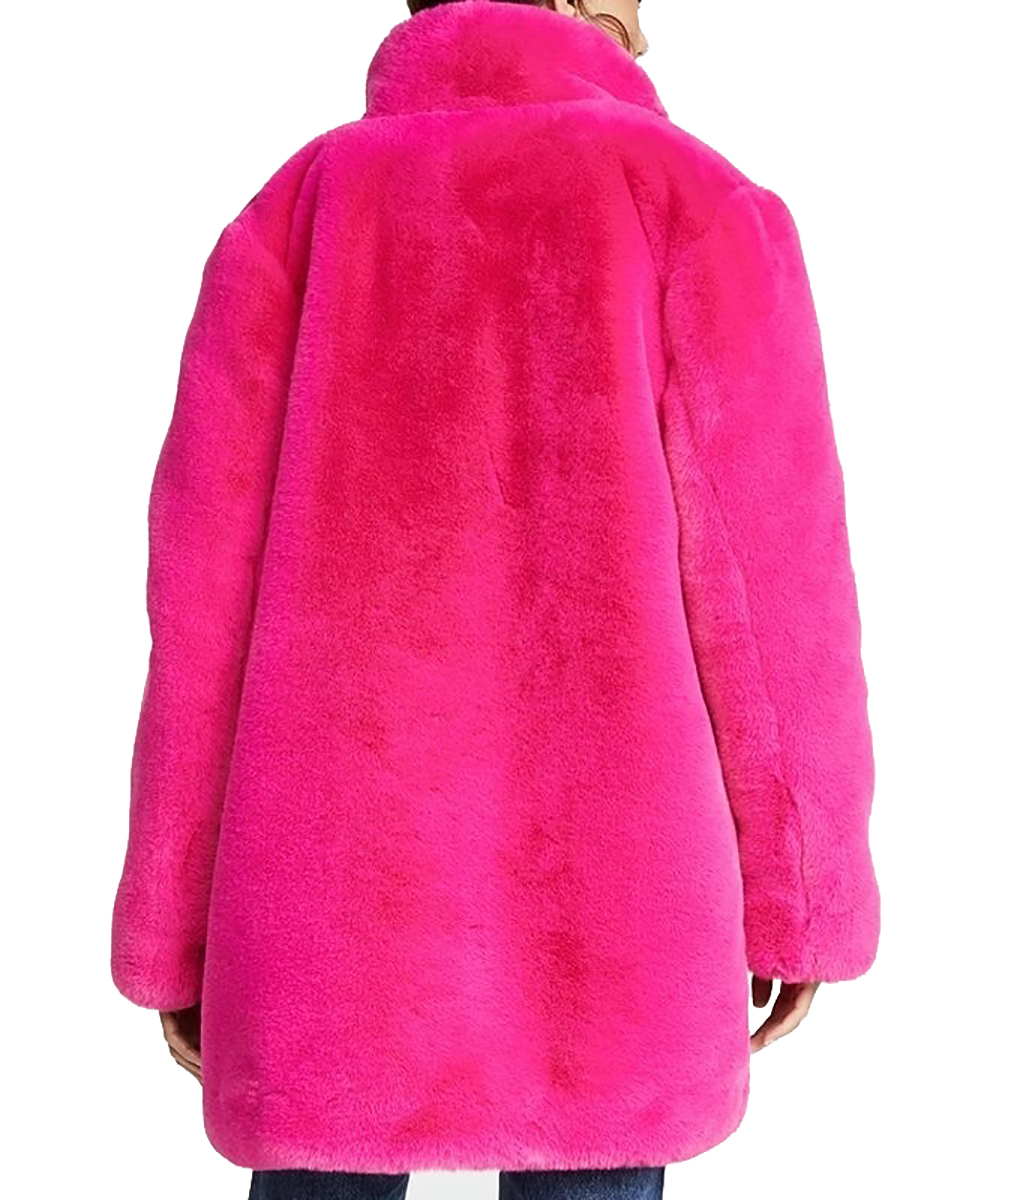 Miss Americana Taylor Swift Coat | Pink Fur Coat |US Jackets